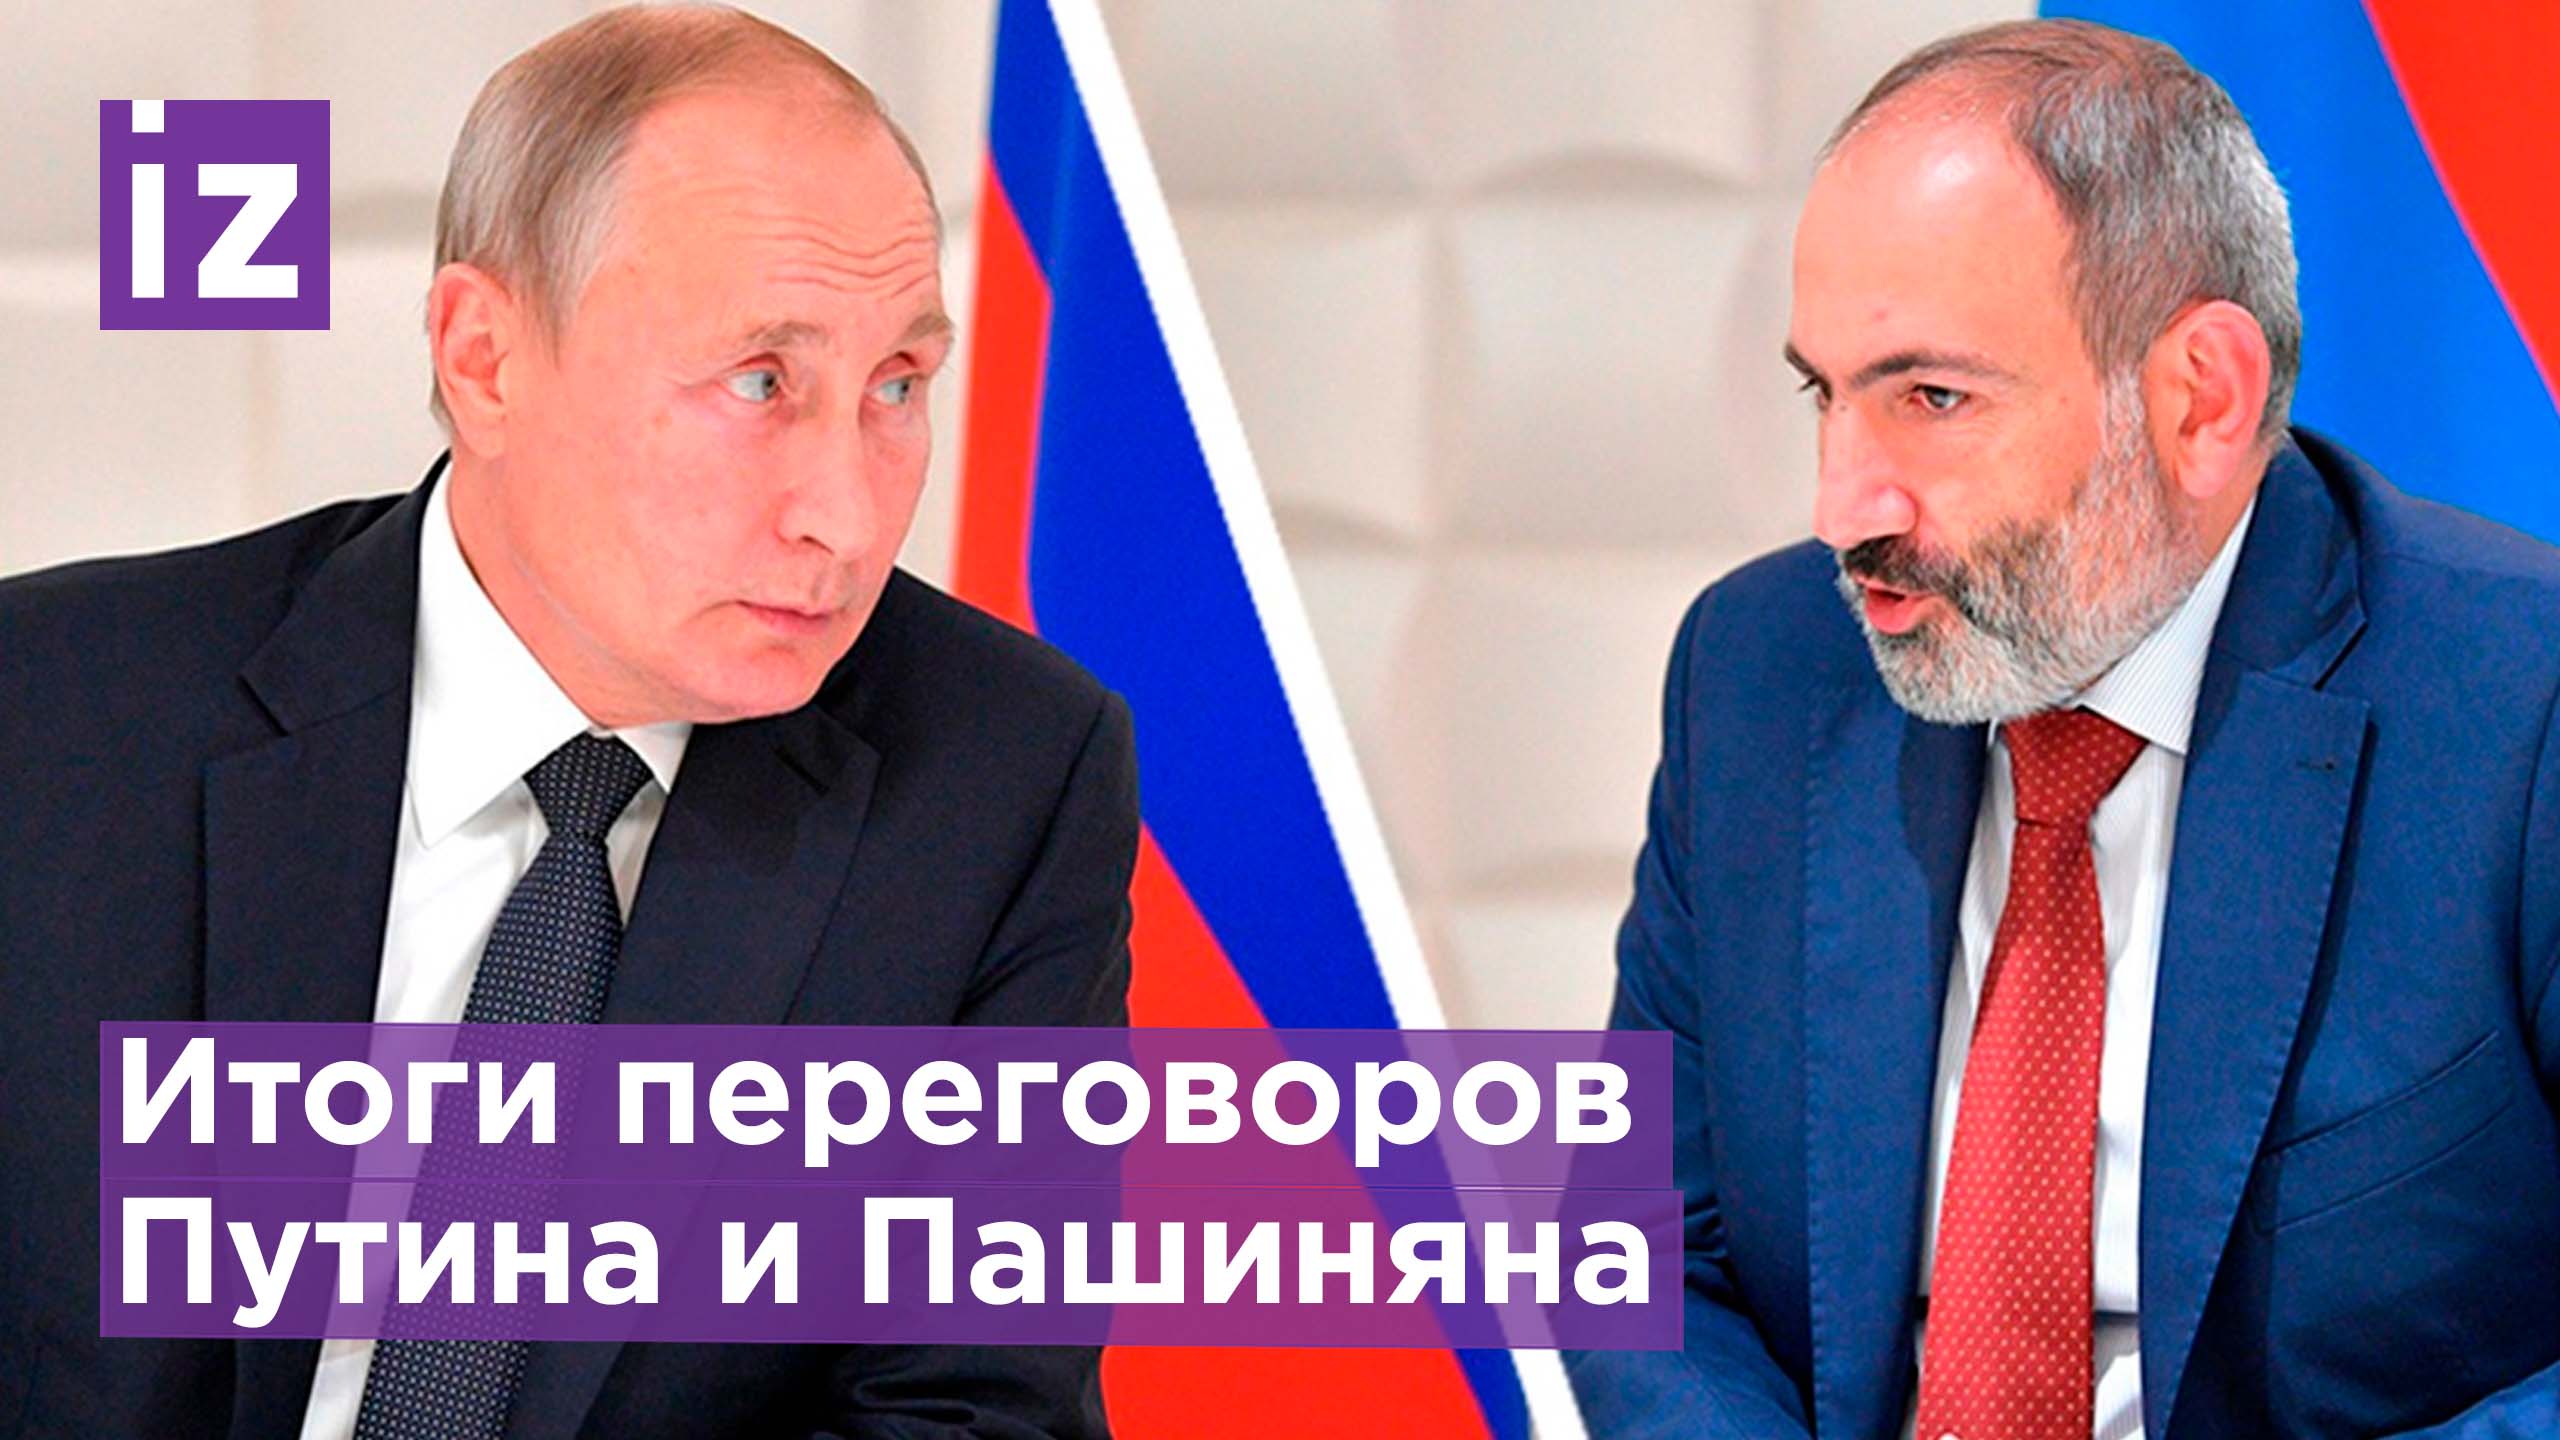 Путин и Пашинян договорились усилить борьбу с проявлением дискриминации по национальному признаку